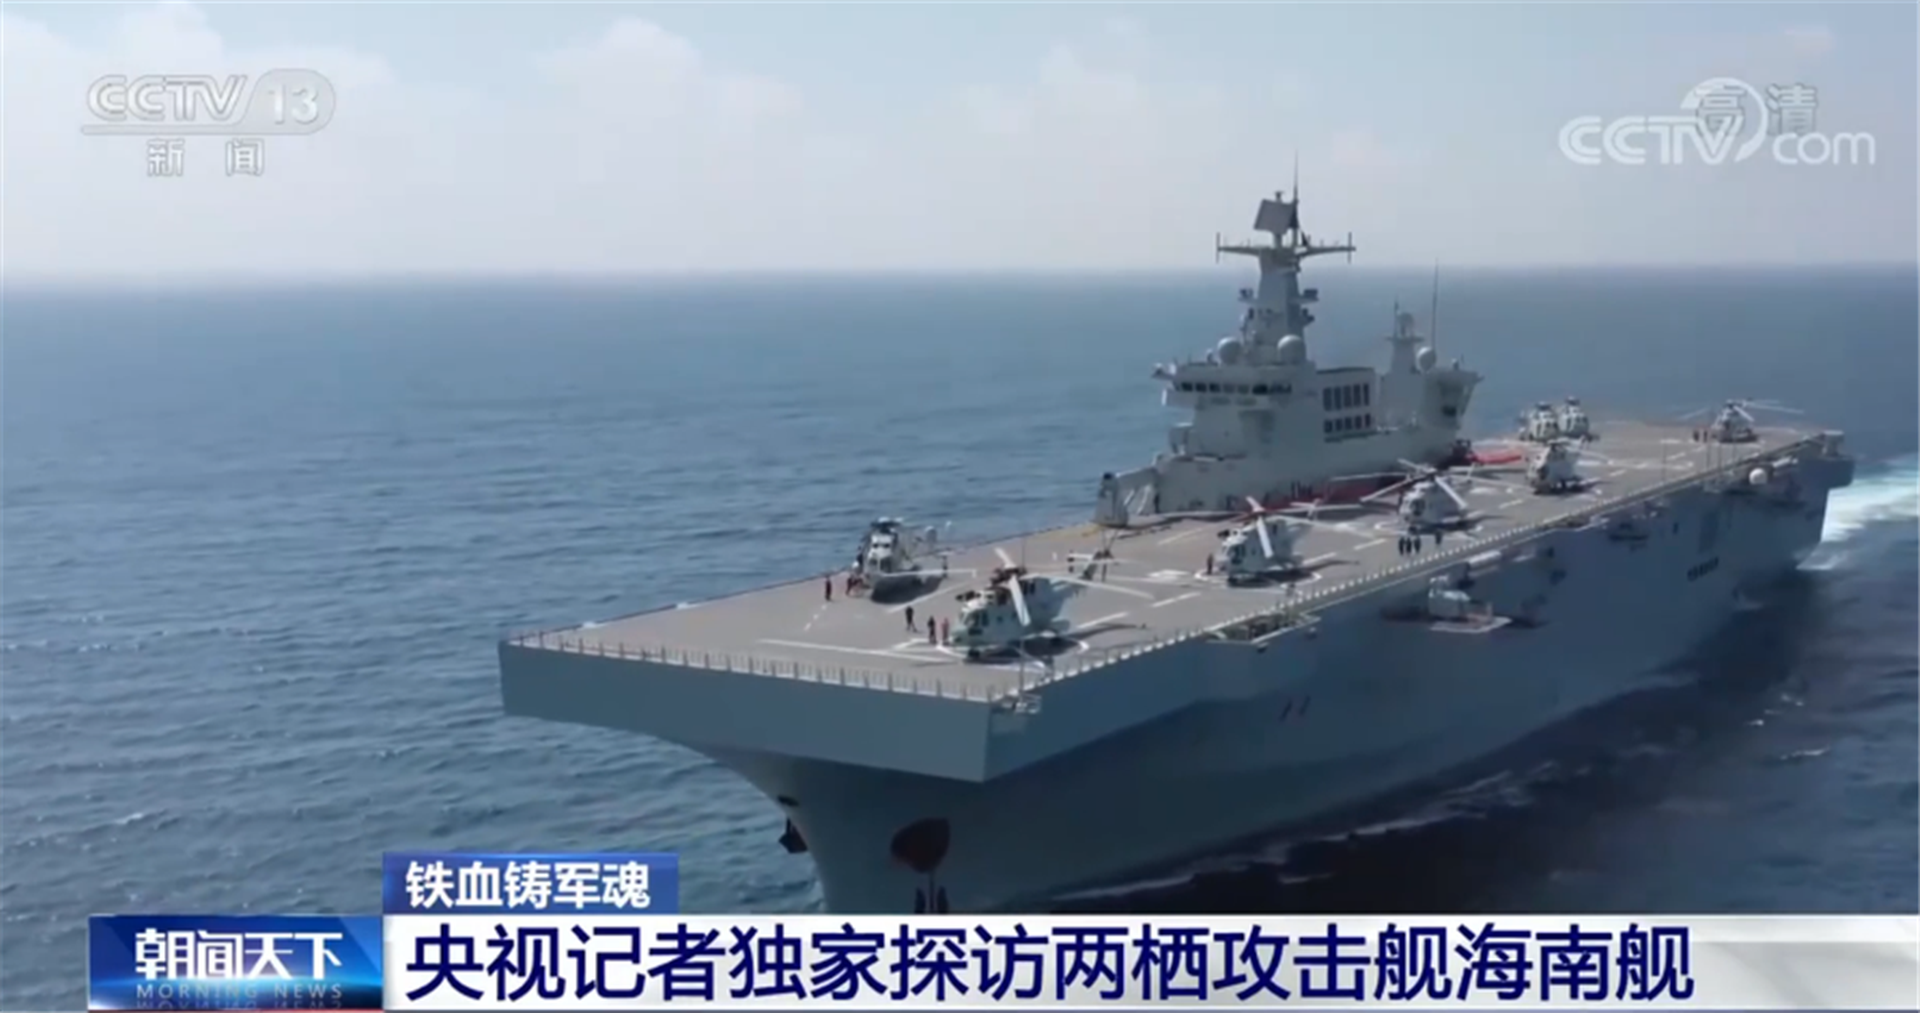 海南舰甲板可容纳多架直升机。（中国央视截图）